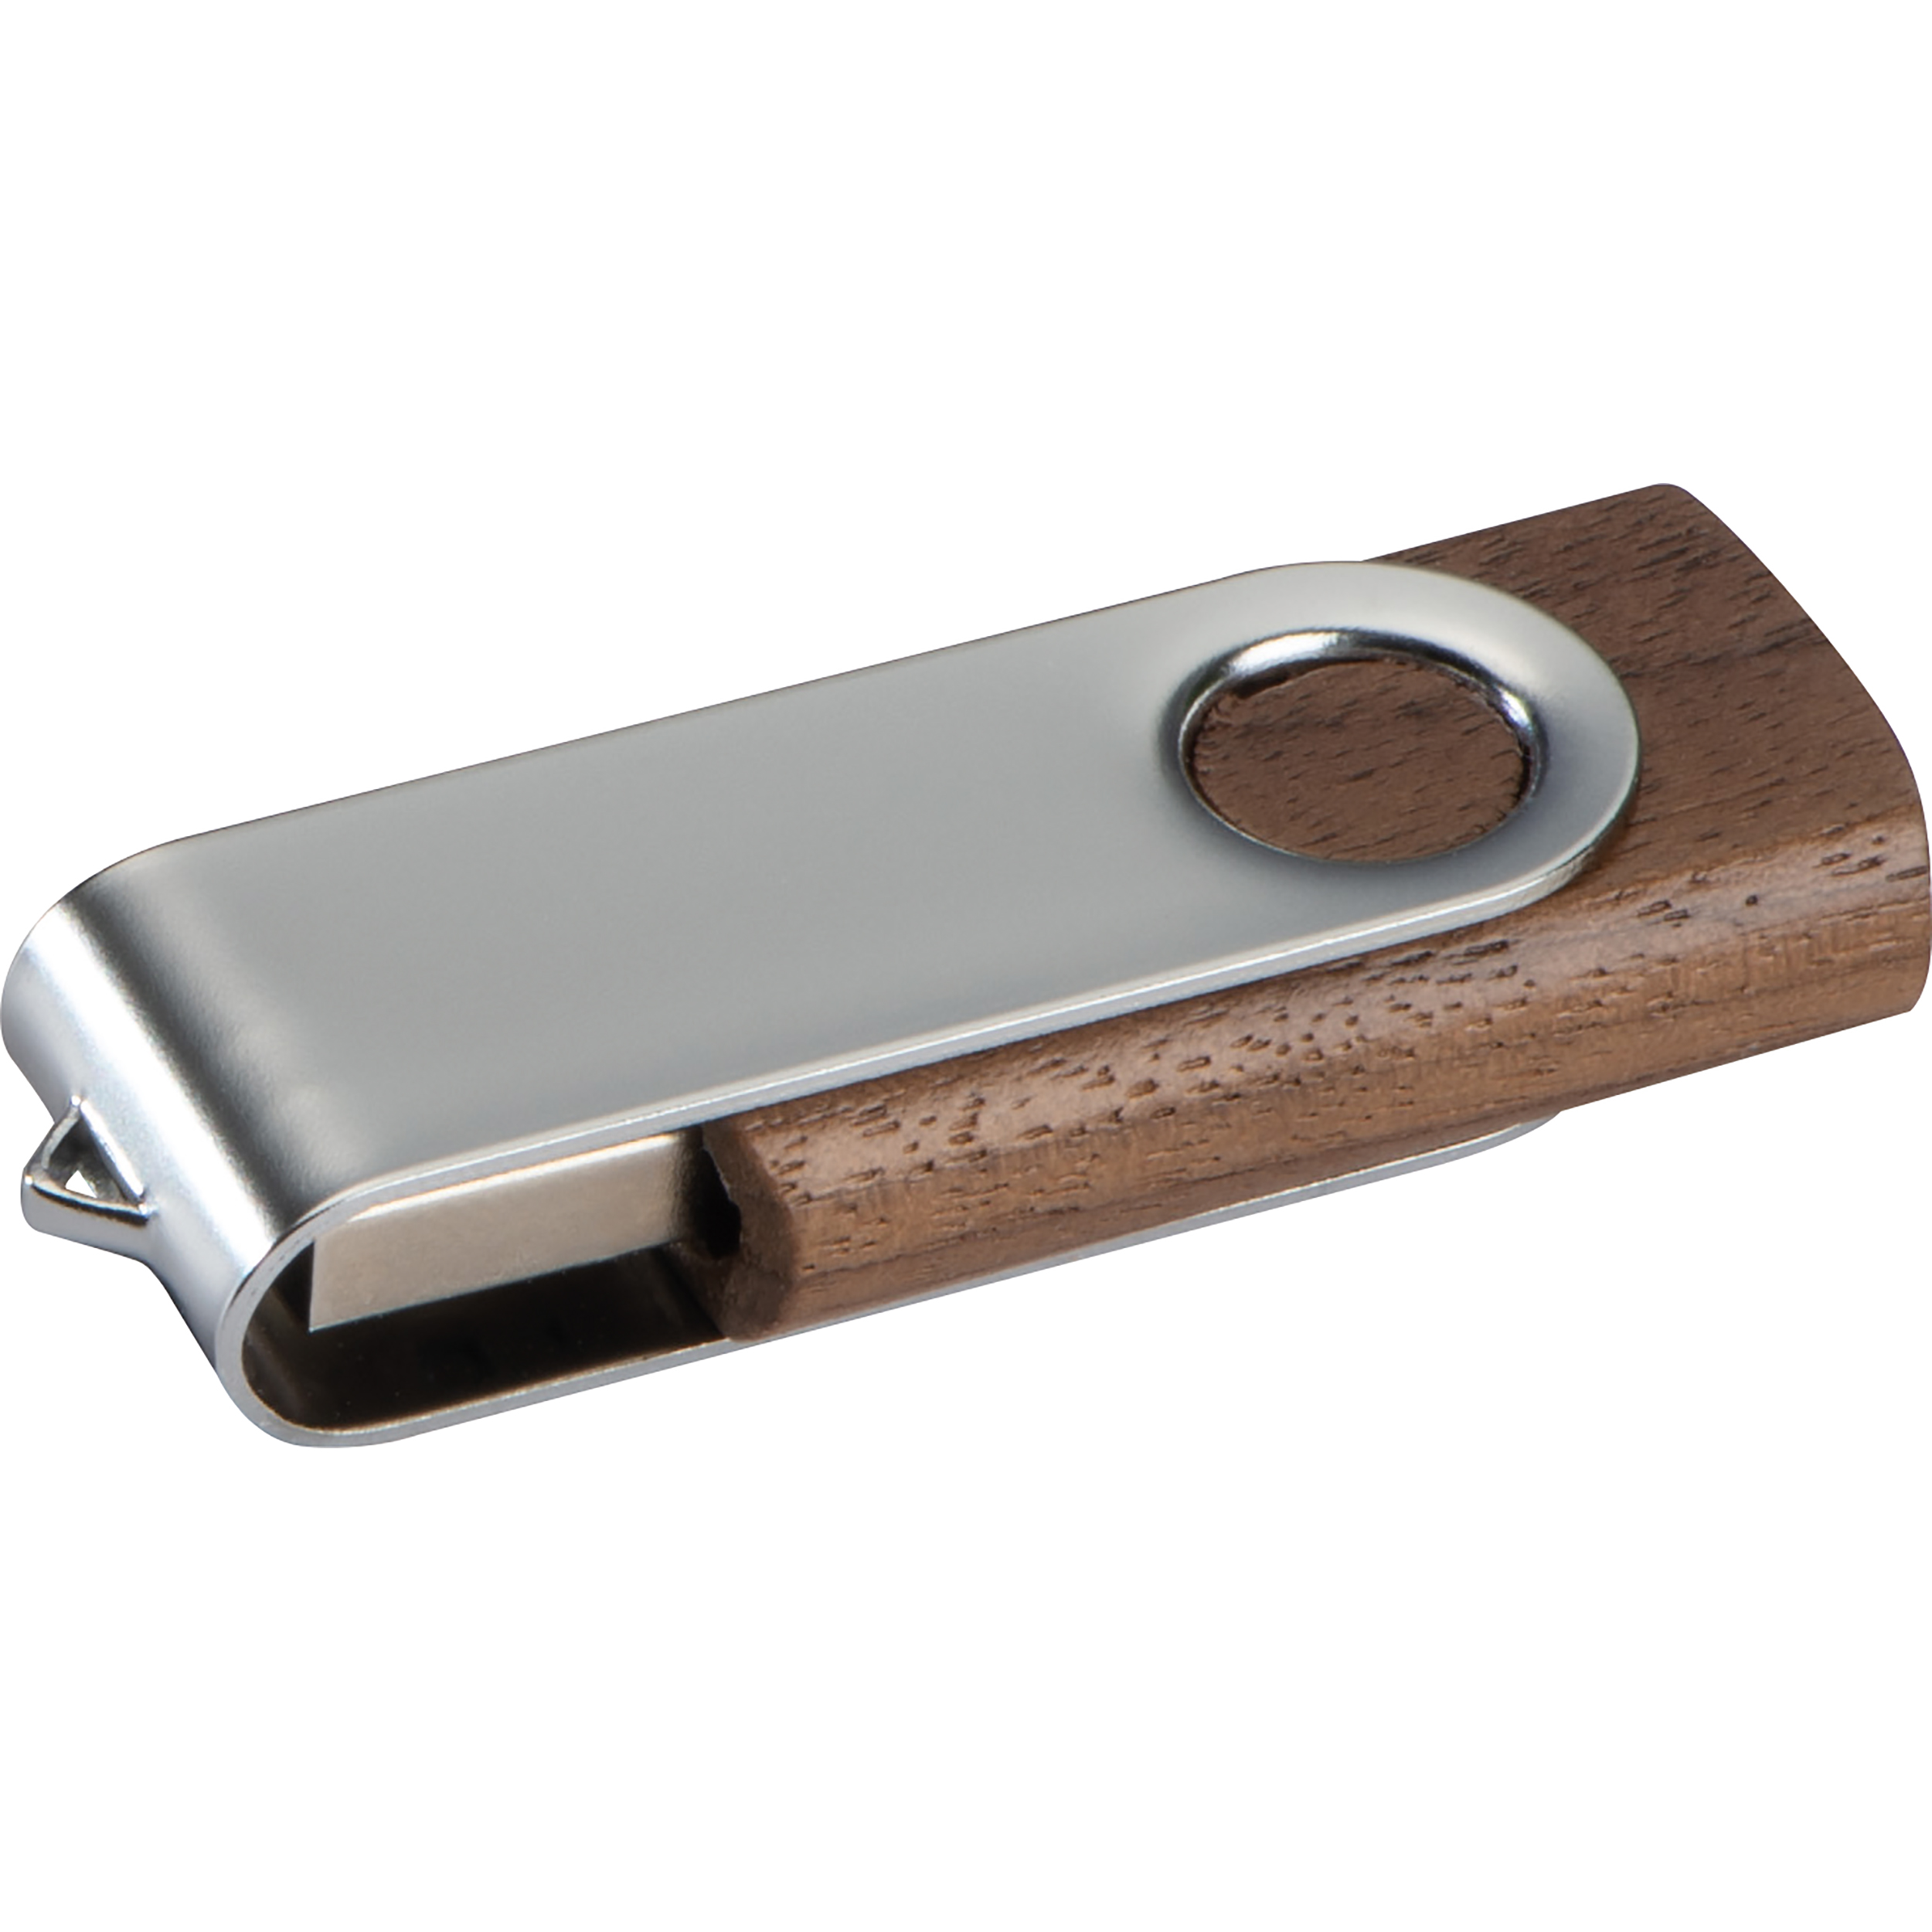 USB-Stick Twist mit Holzkörper dunkel 8GB